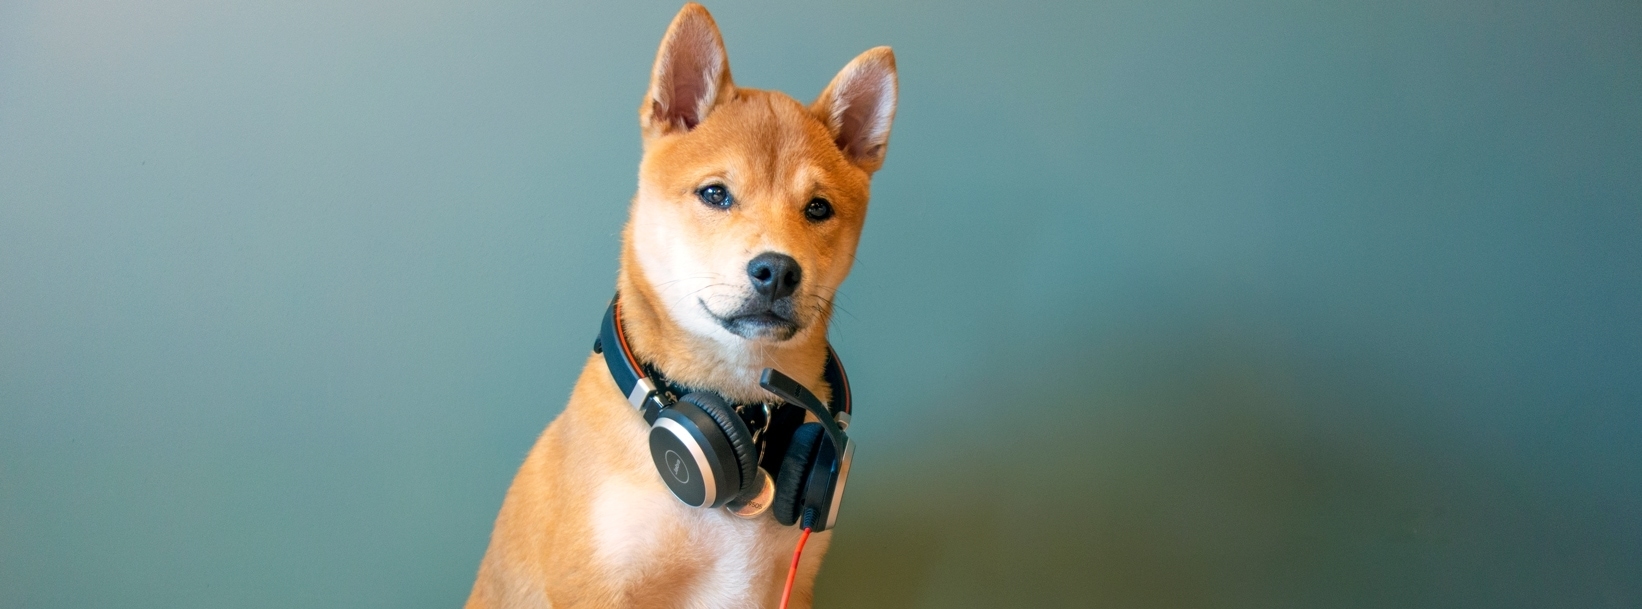 Hund mit Kopfhörern um den Hals